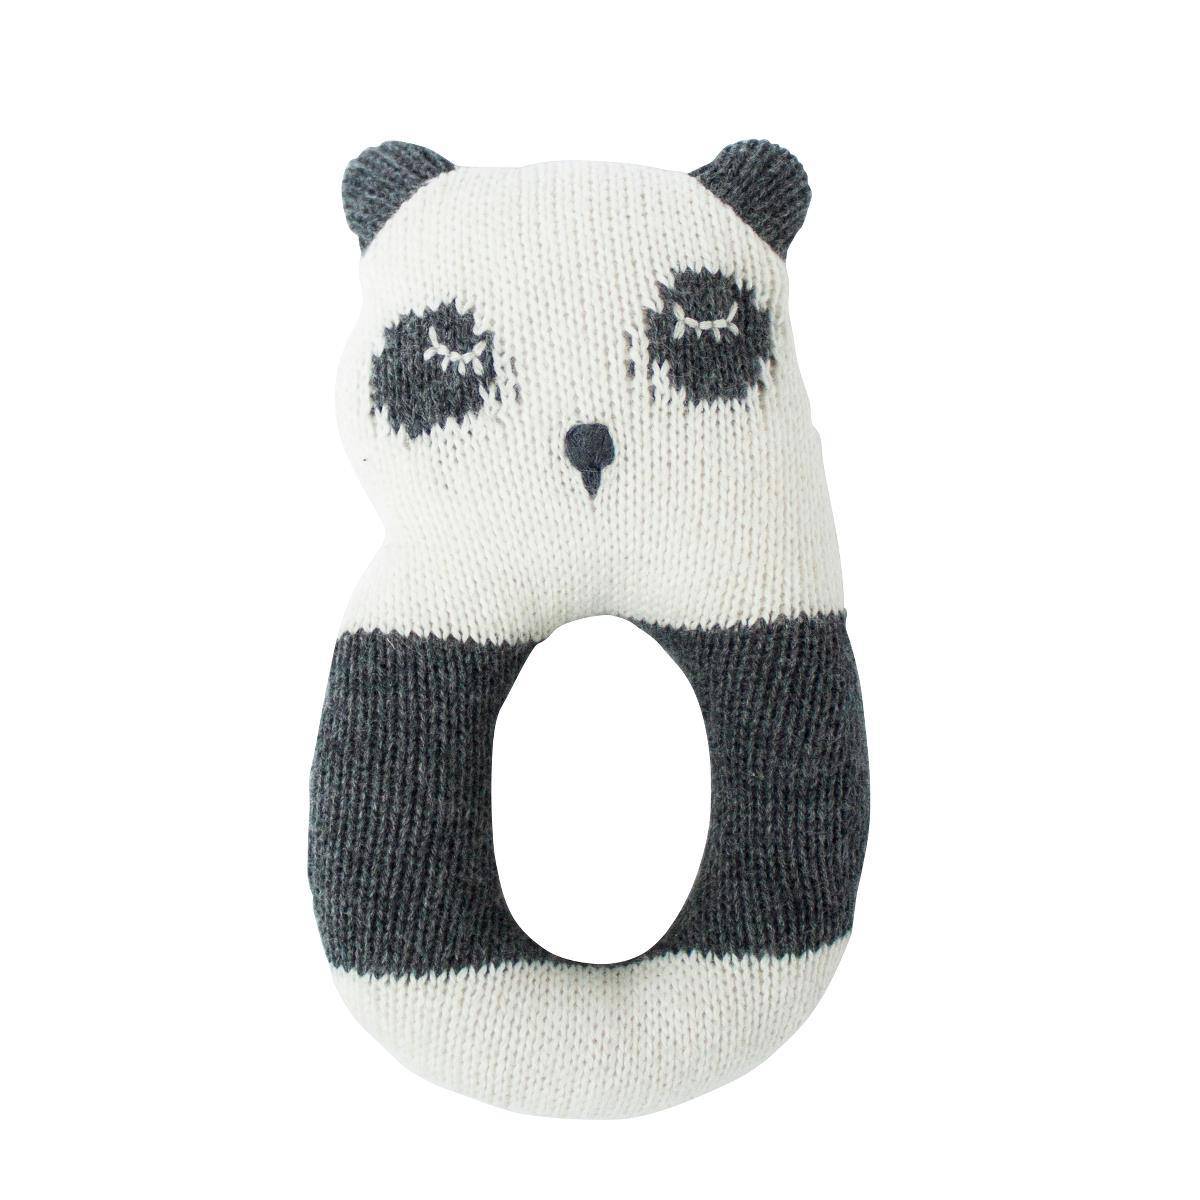 Strick-Rassel "Panny der Panda" - KleinKinderKram Baby Online Shop